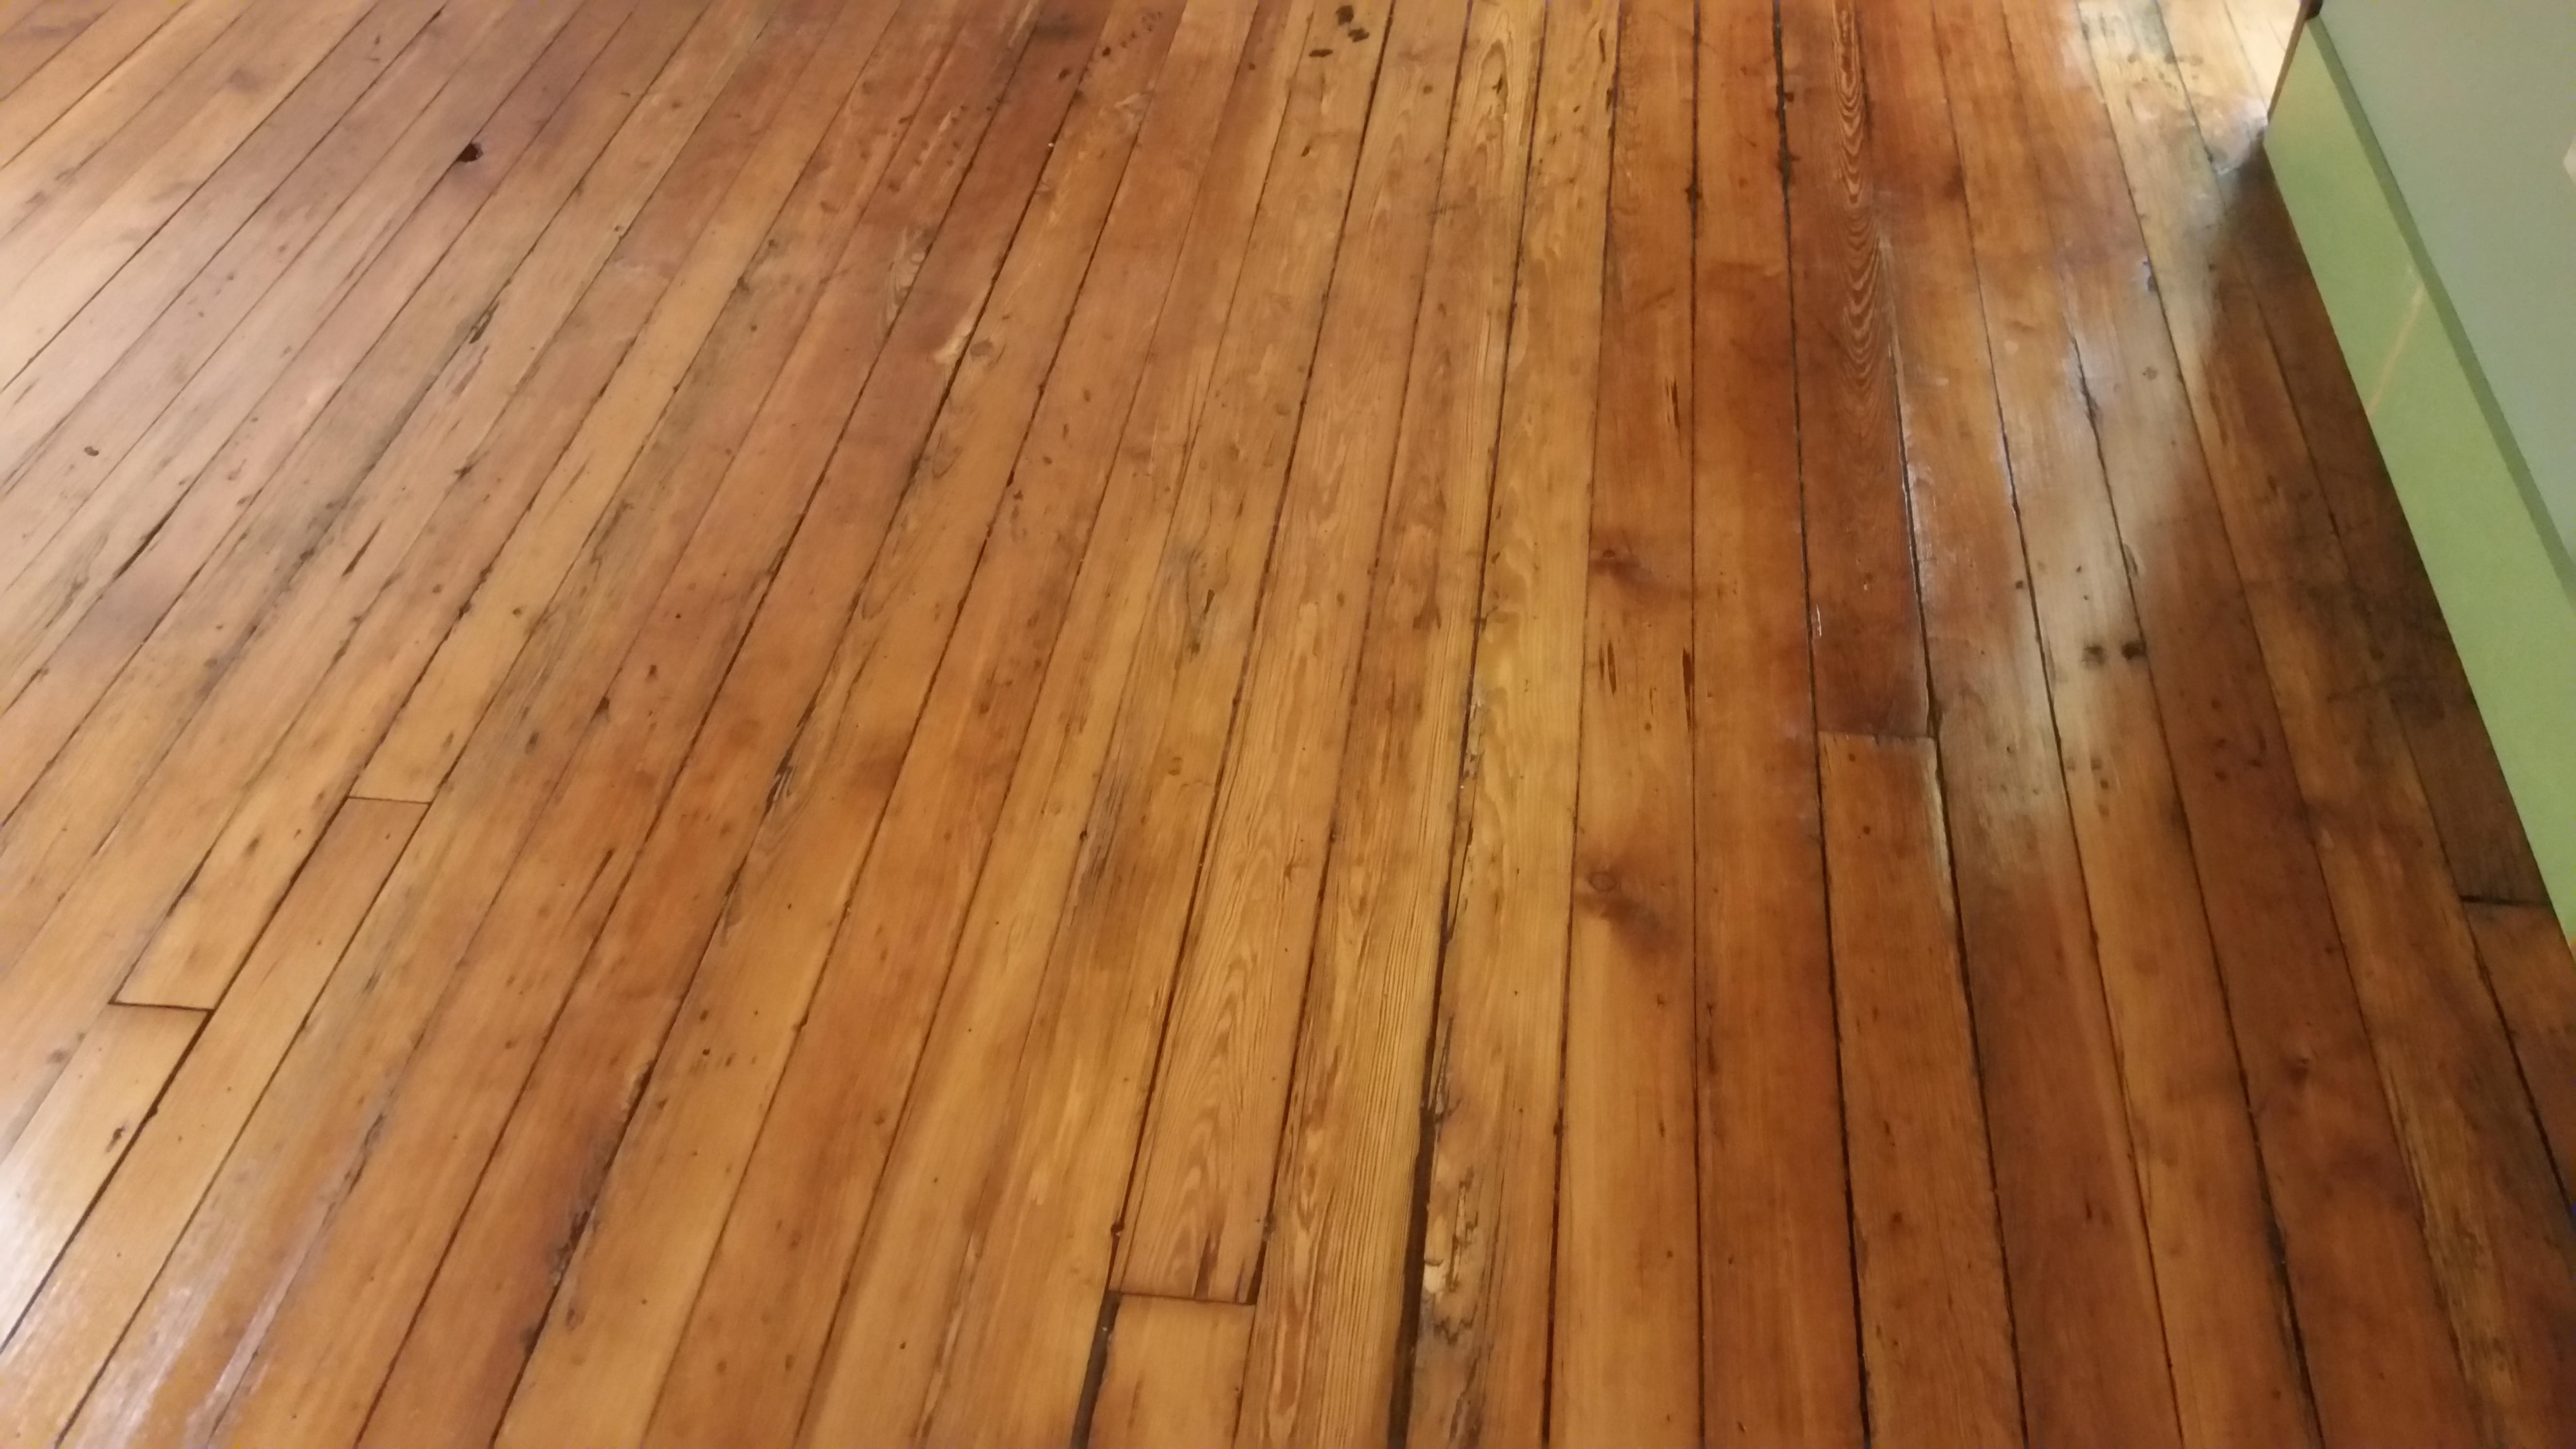 17 Spectacular Hardwood Floor Specialist Near Me 2023 free download hardwood floor specialist near me of rochester hardwood floors of utica home in 20150626 143515